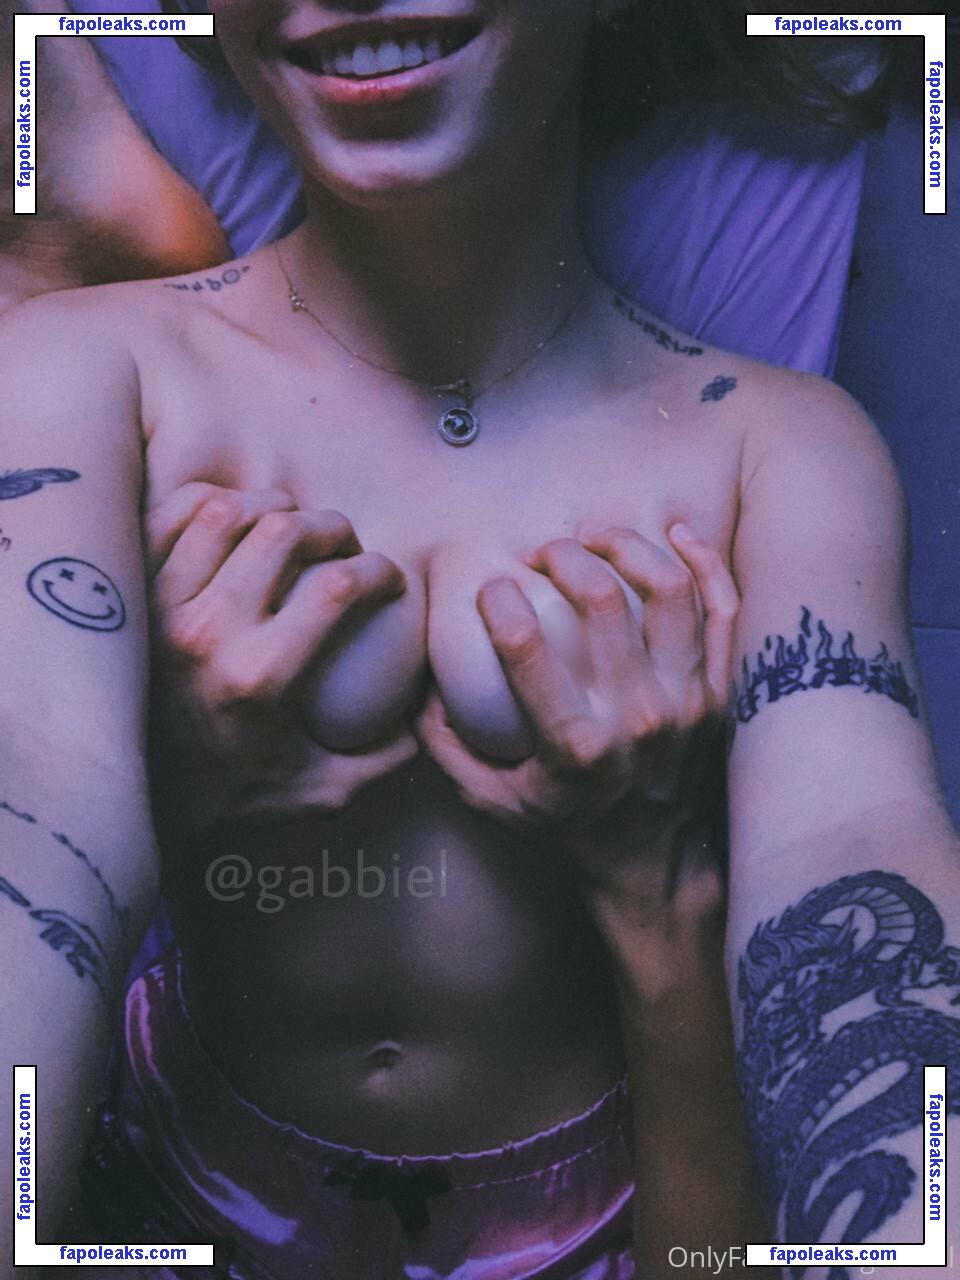 gabbiel / Gabbie / gabbiel_model nude photo #0001 from OnlyFans